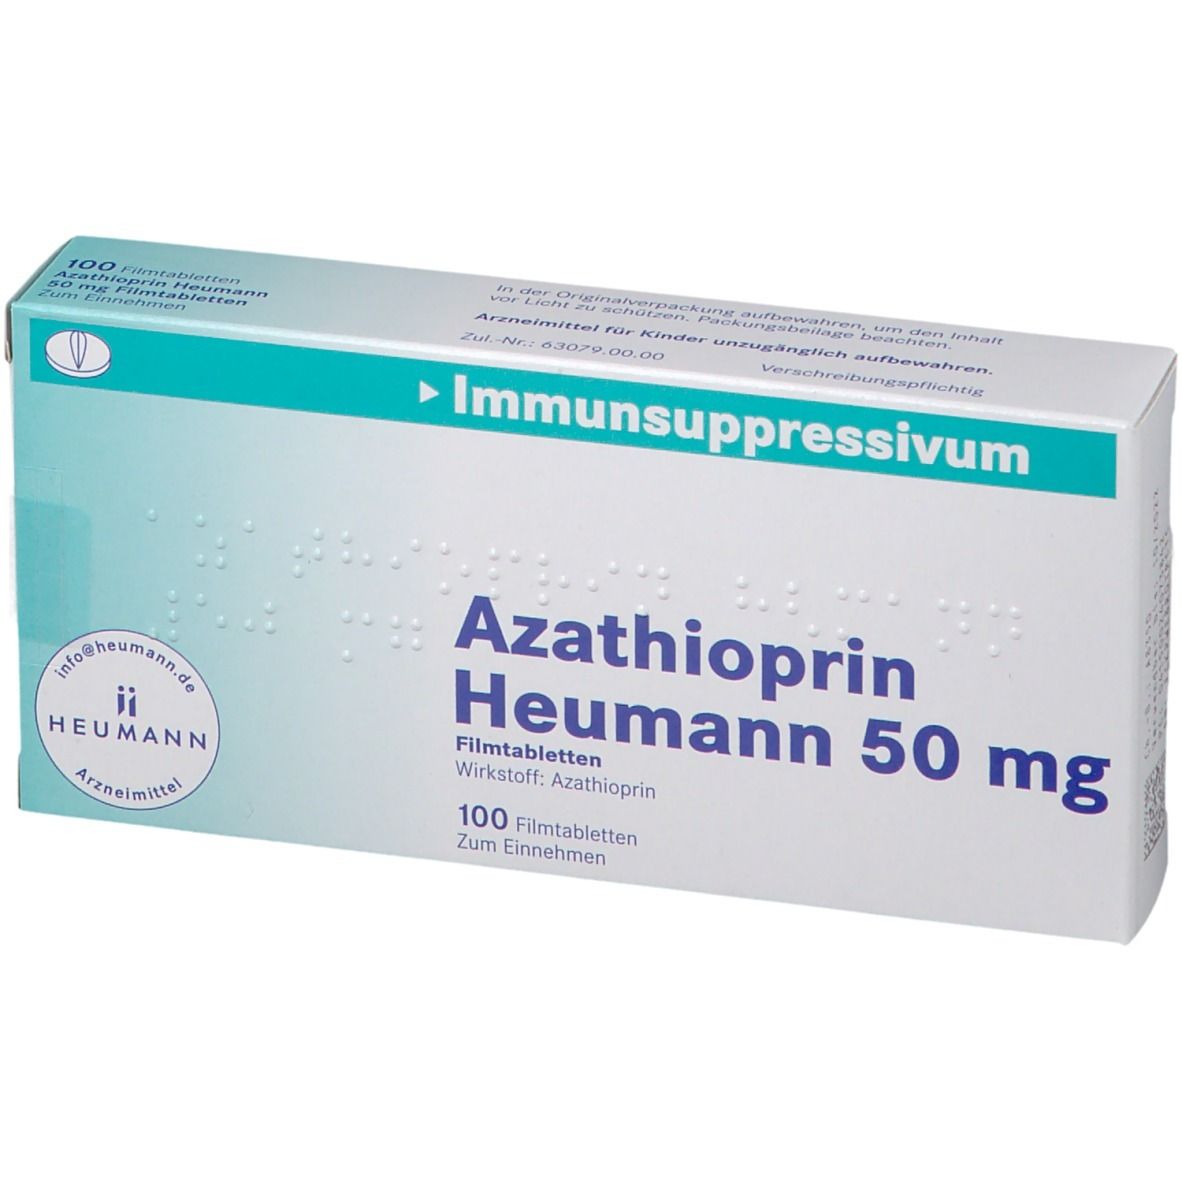 Azathioprin Heumann 50 mg